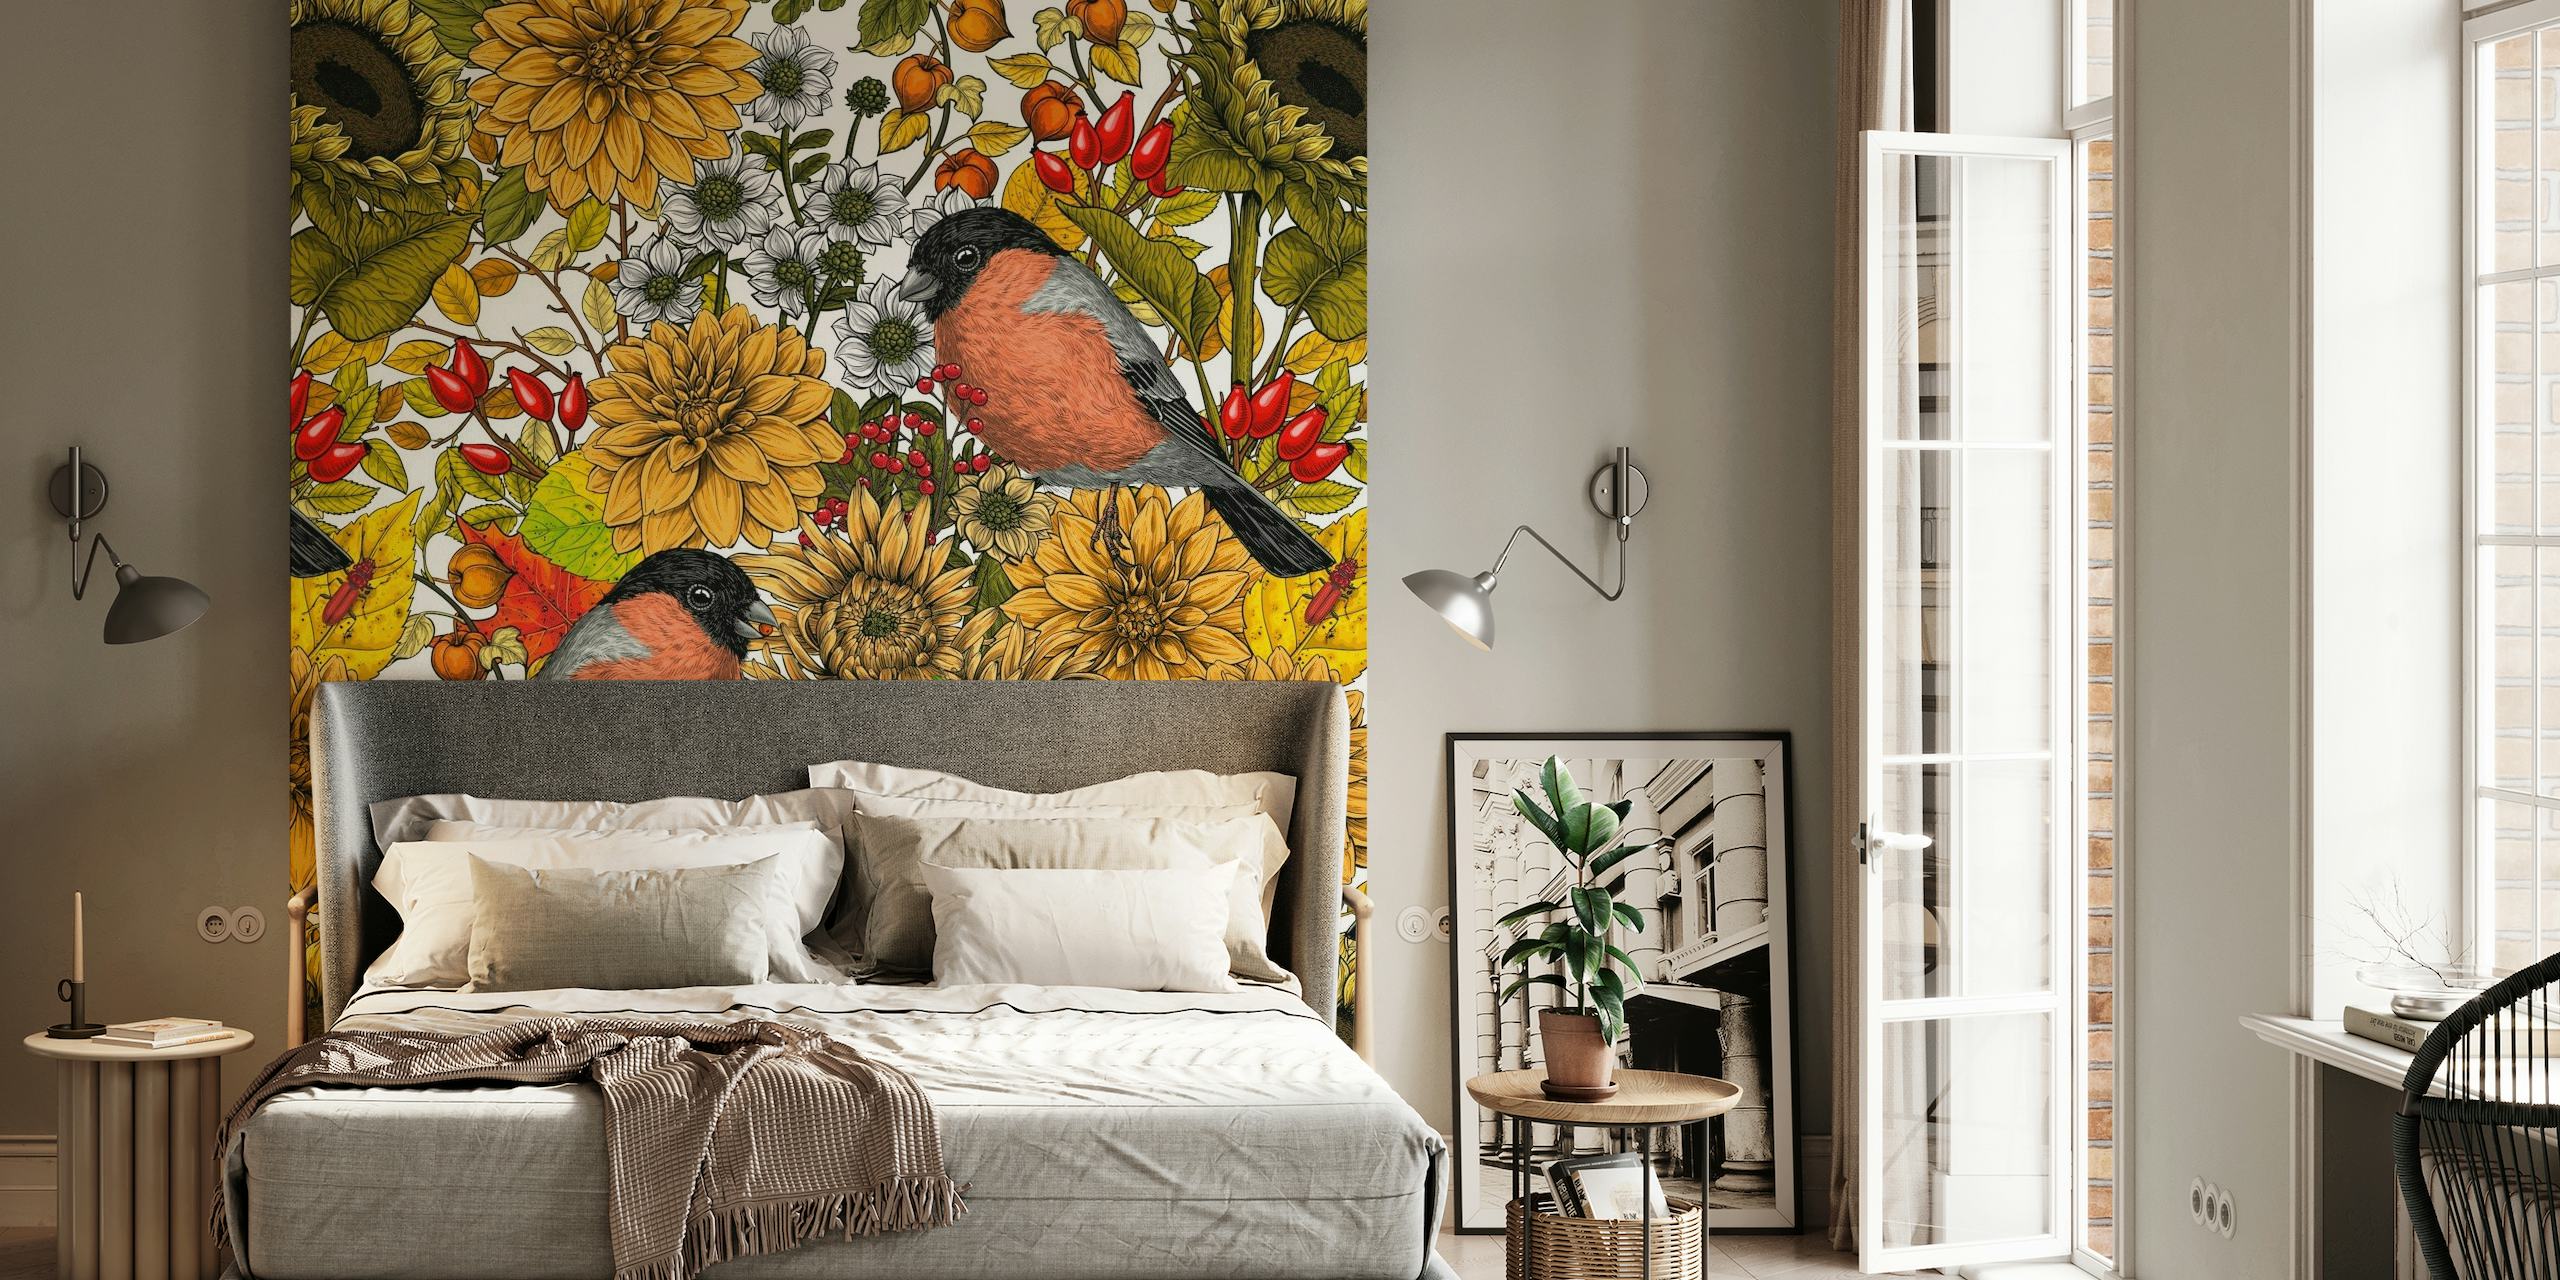 Vægmaleri med efterårshavetema med solsikker og fugle